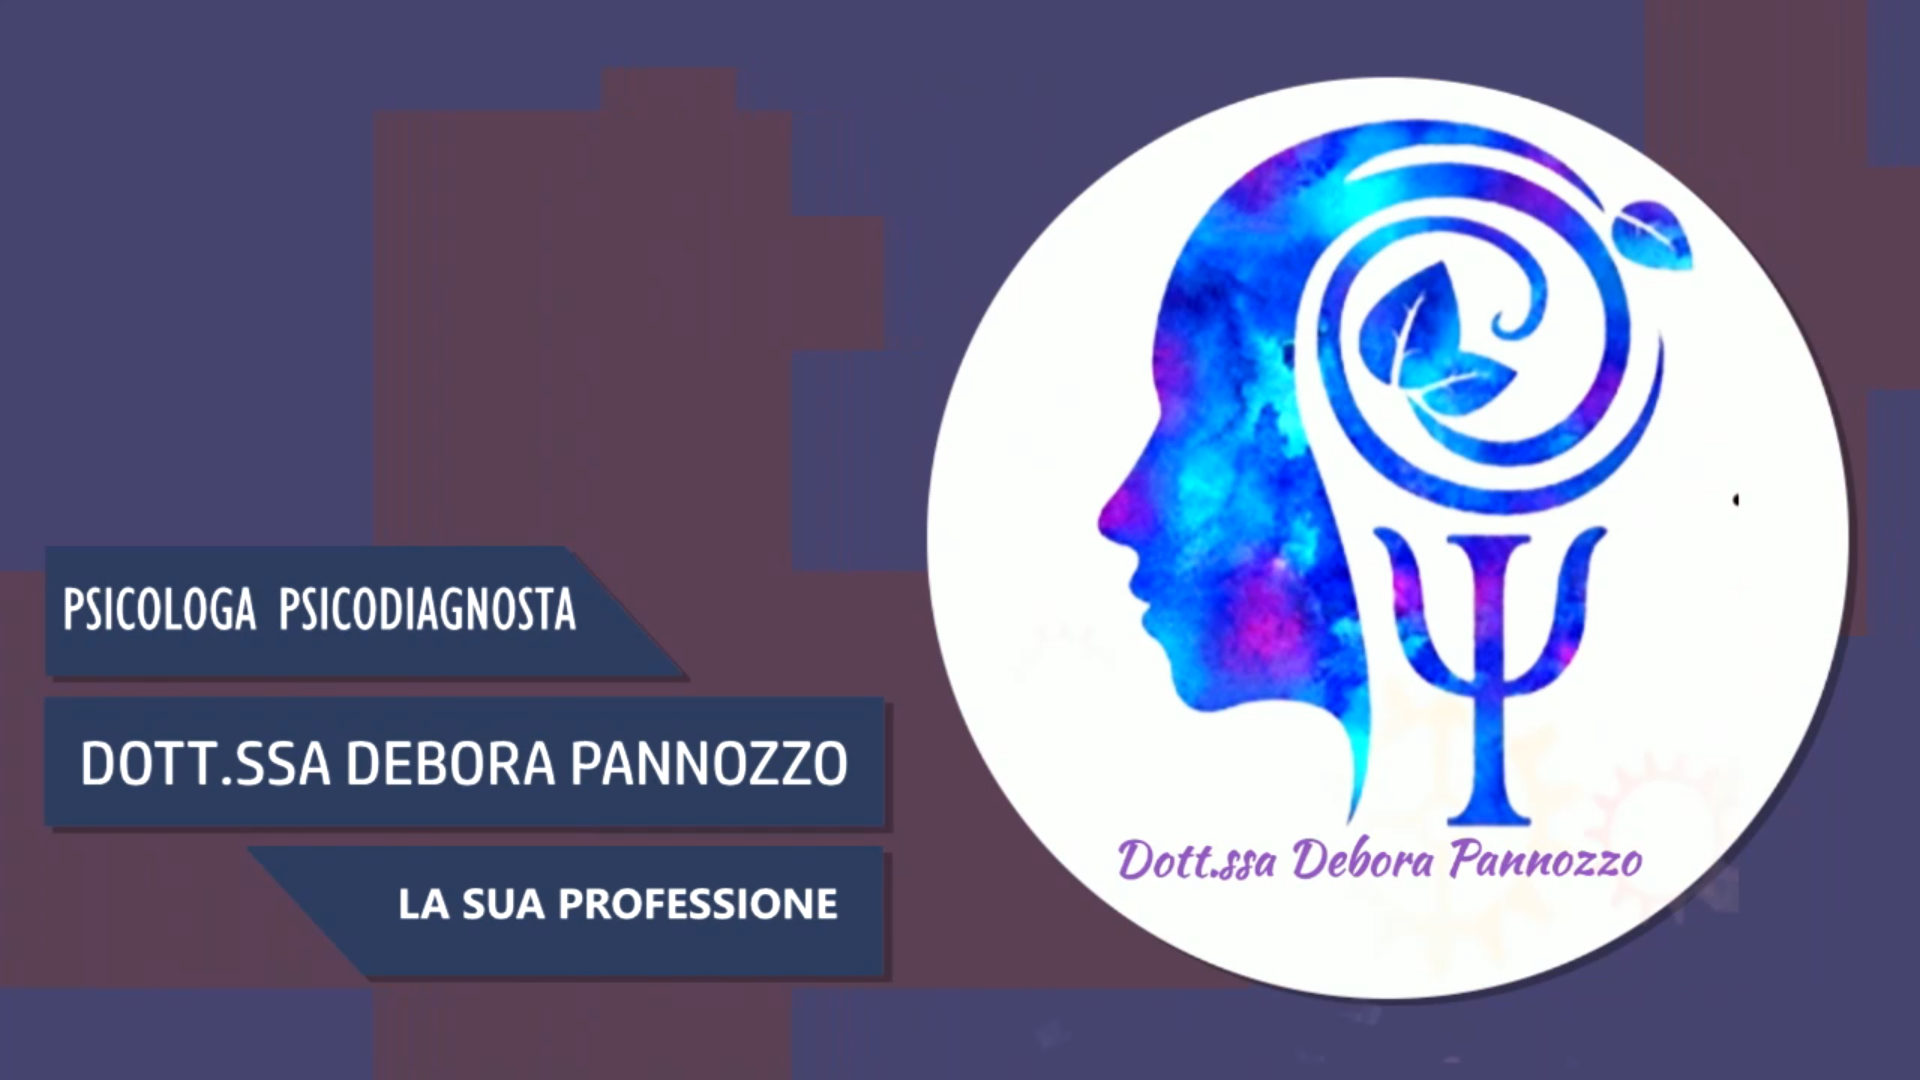 Intervista alla Dott.ssa Debora Pannozzo – La sua professione